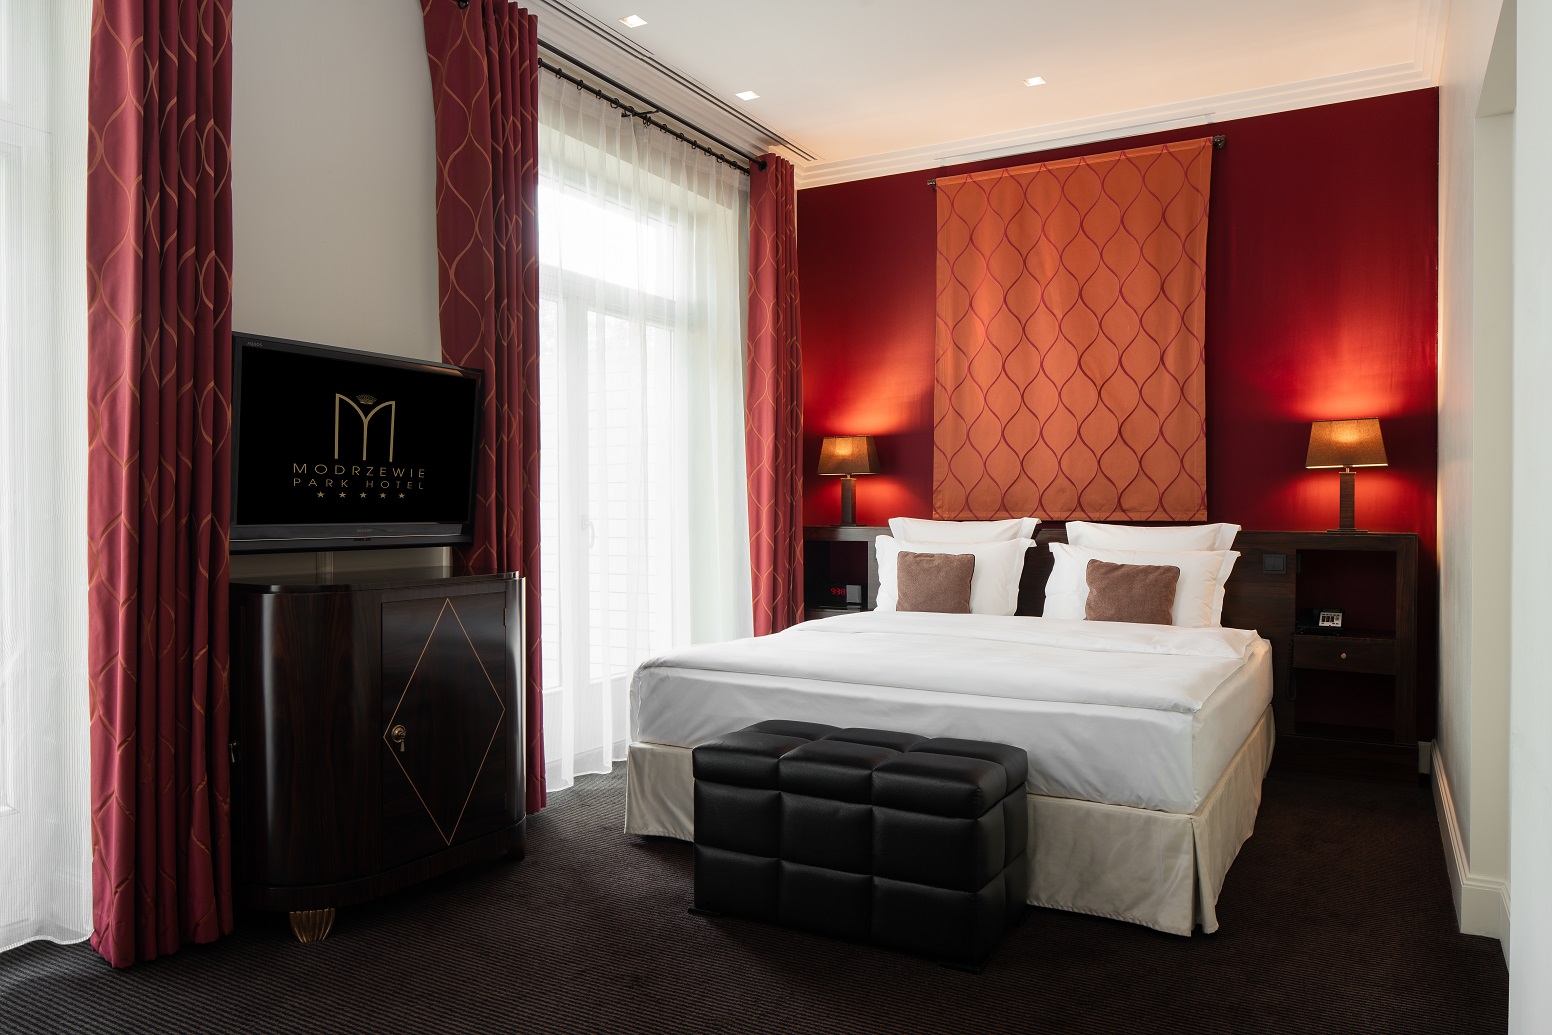 zdjęcie przedstawia hotelowy pokój, urządzony gustownie w kolorach bieli czerwieni i mocnego brązu